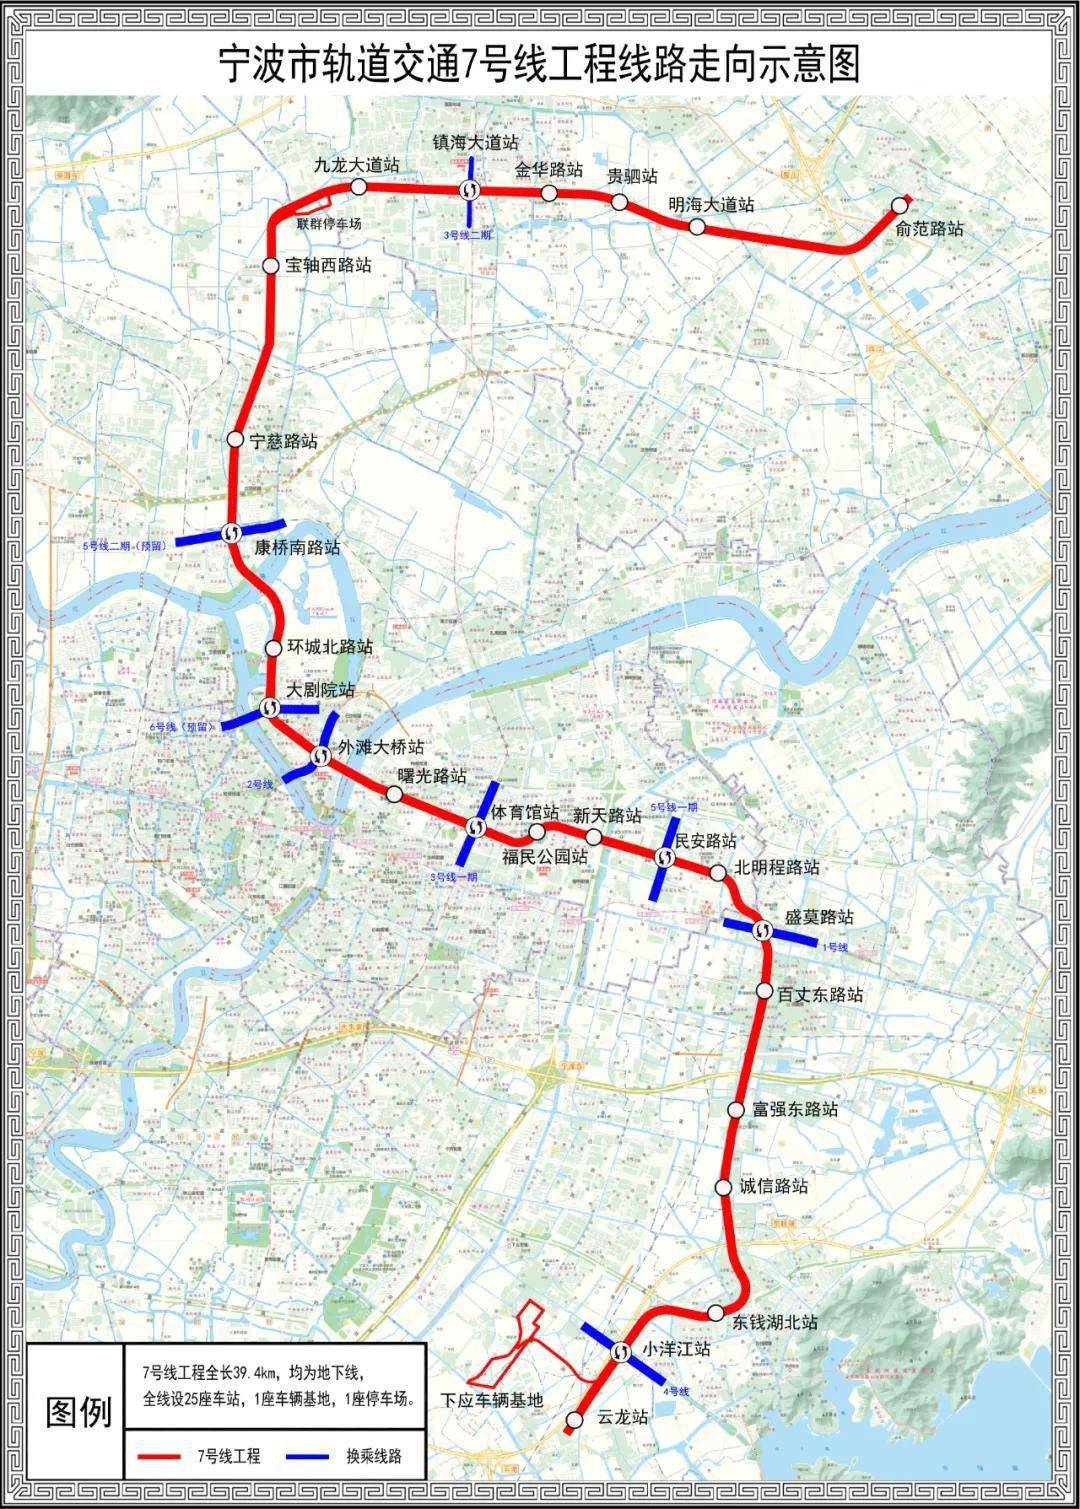 宁波地铁7号线,8号线一期工程全线开工